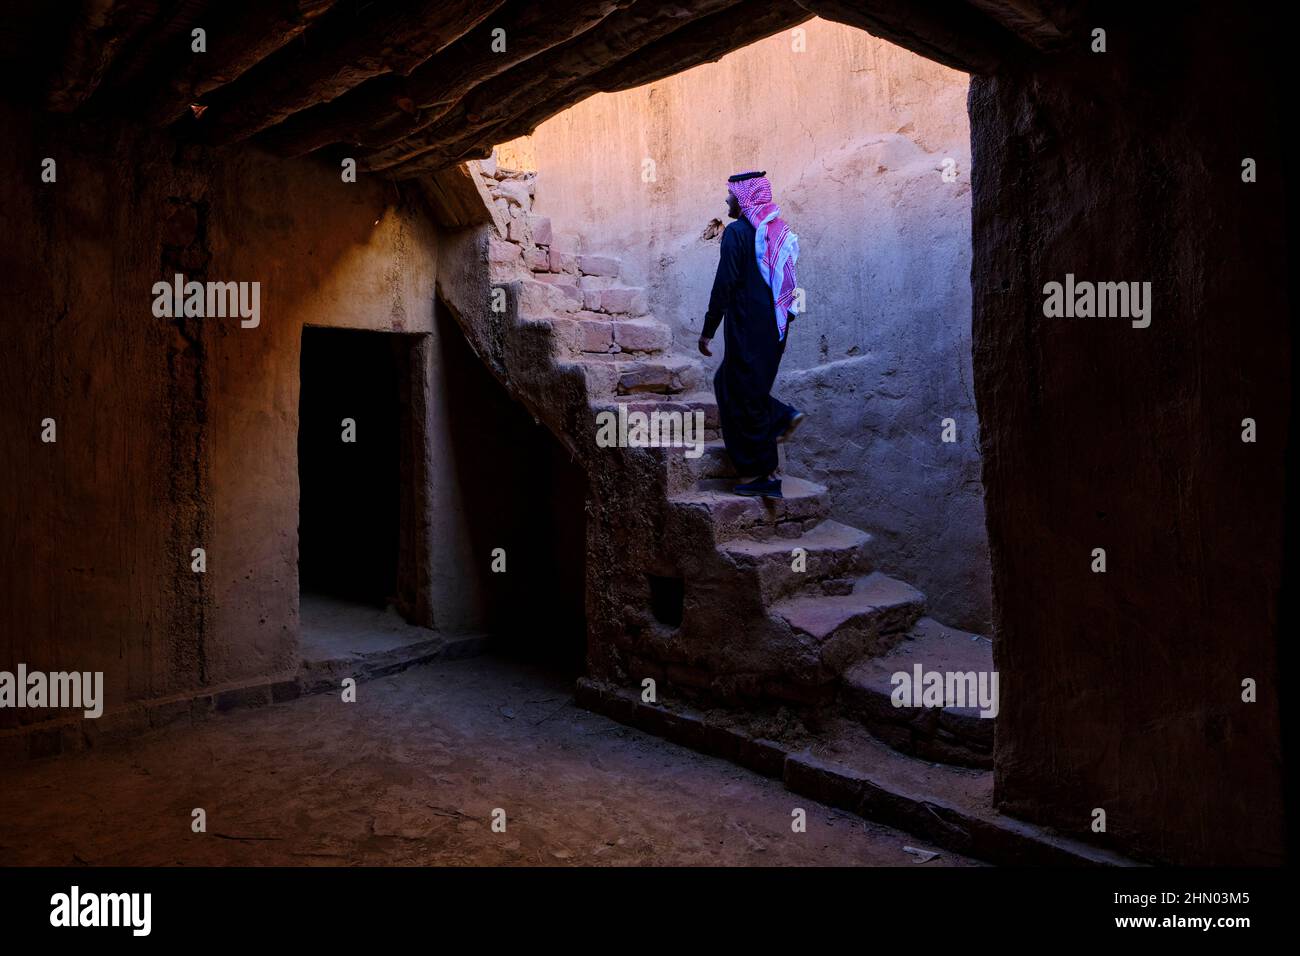 Saudi Arabia, Al Madinah Region, AlUla or Al Ula, Archaeologic Site of Old Town, interior of a house Stock Photo